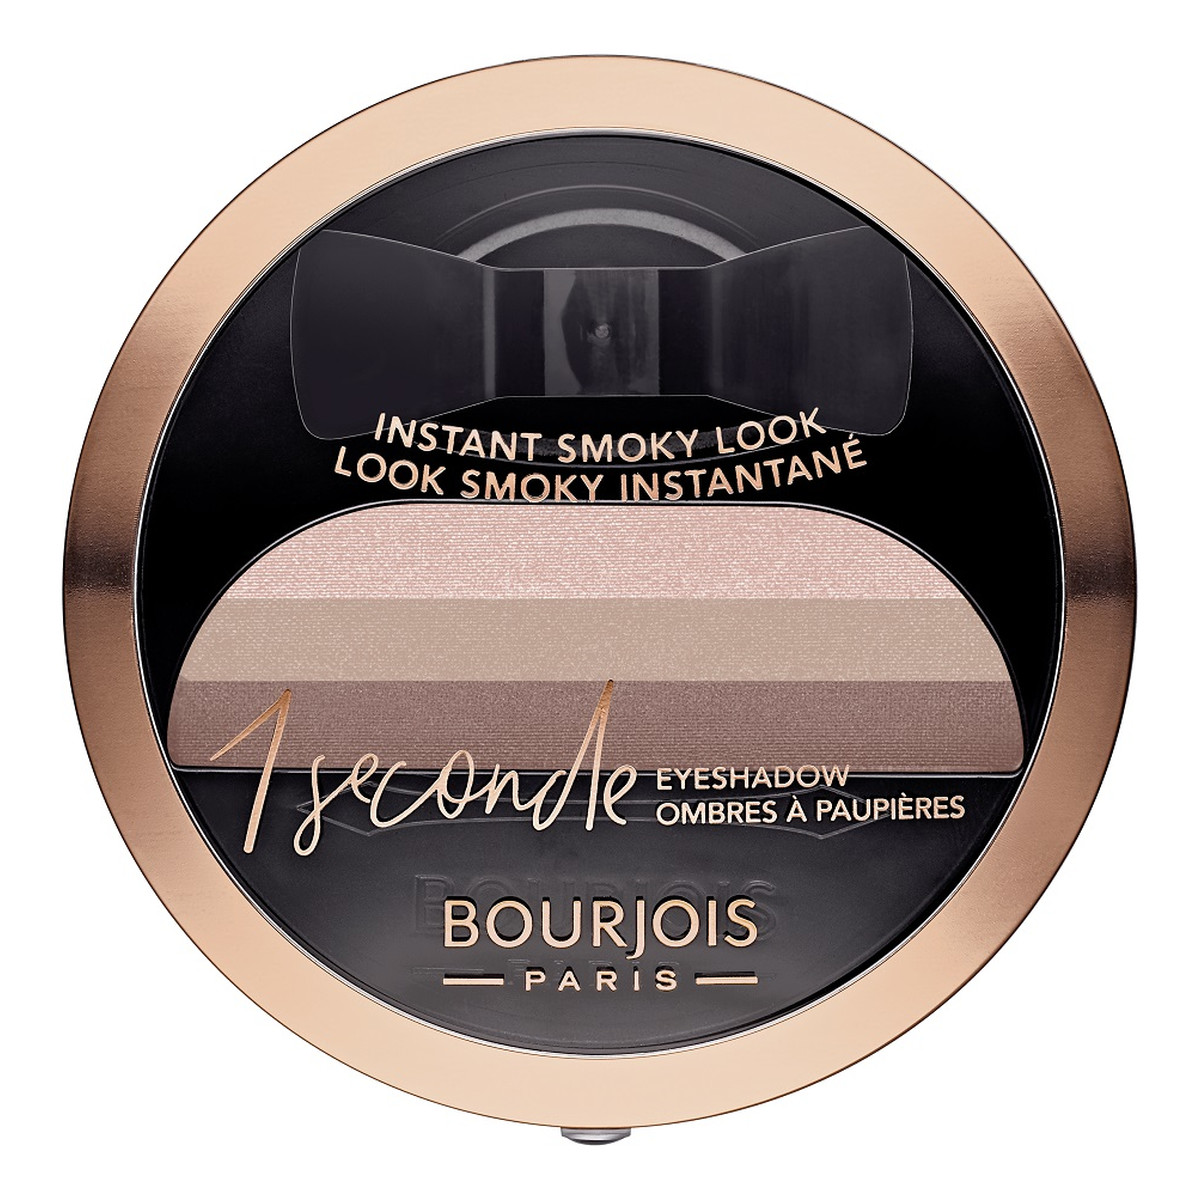 Bourjois Instatnt Smoky Look 1 Seconde Eyeshadow cień do powiek 3g